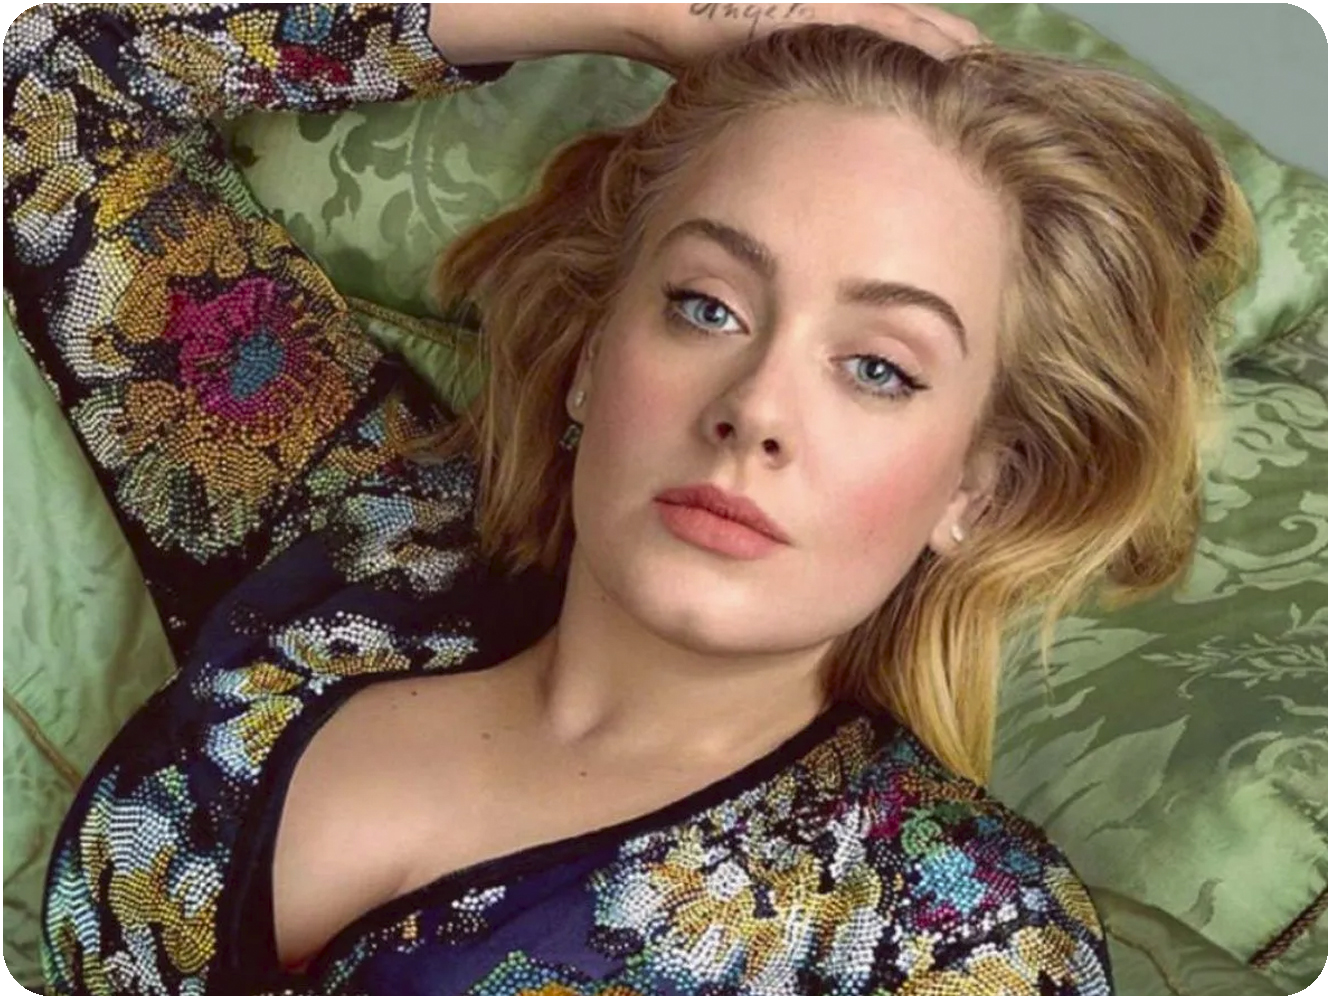  Adele reaparecerá en ‘Saturday Night Live’ el día 24 pero, ¿qué planea hacer la artista?